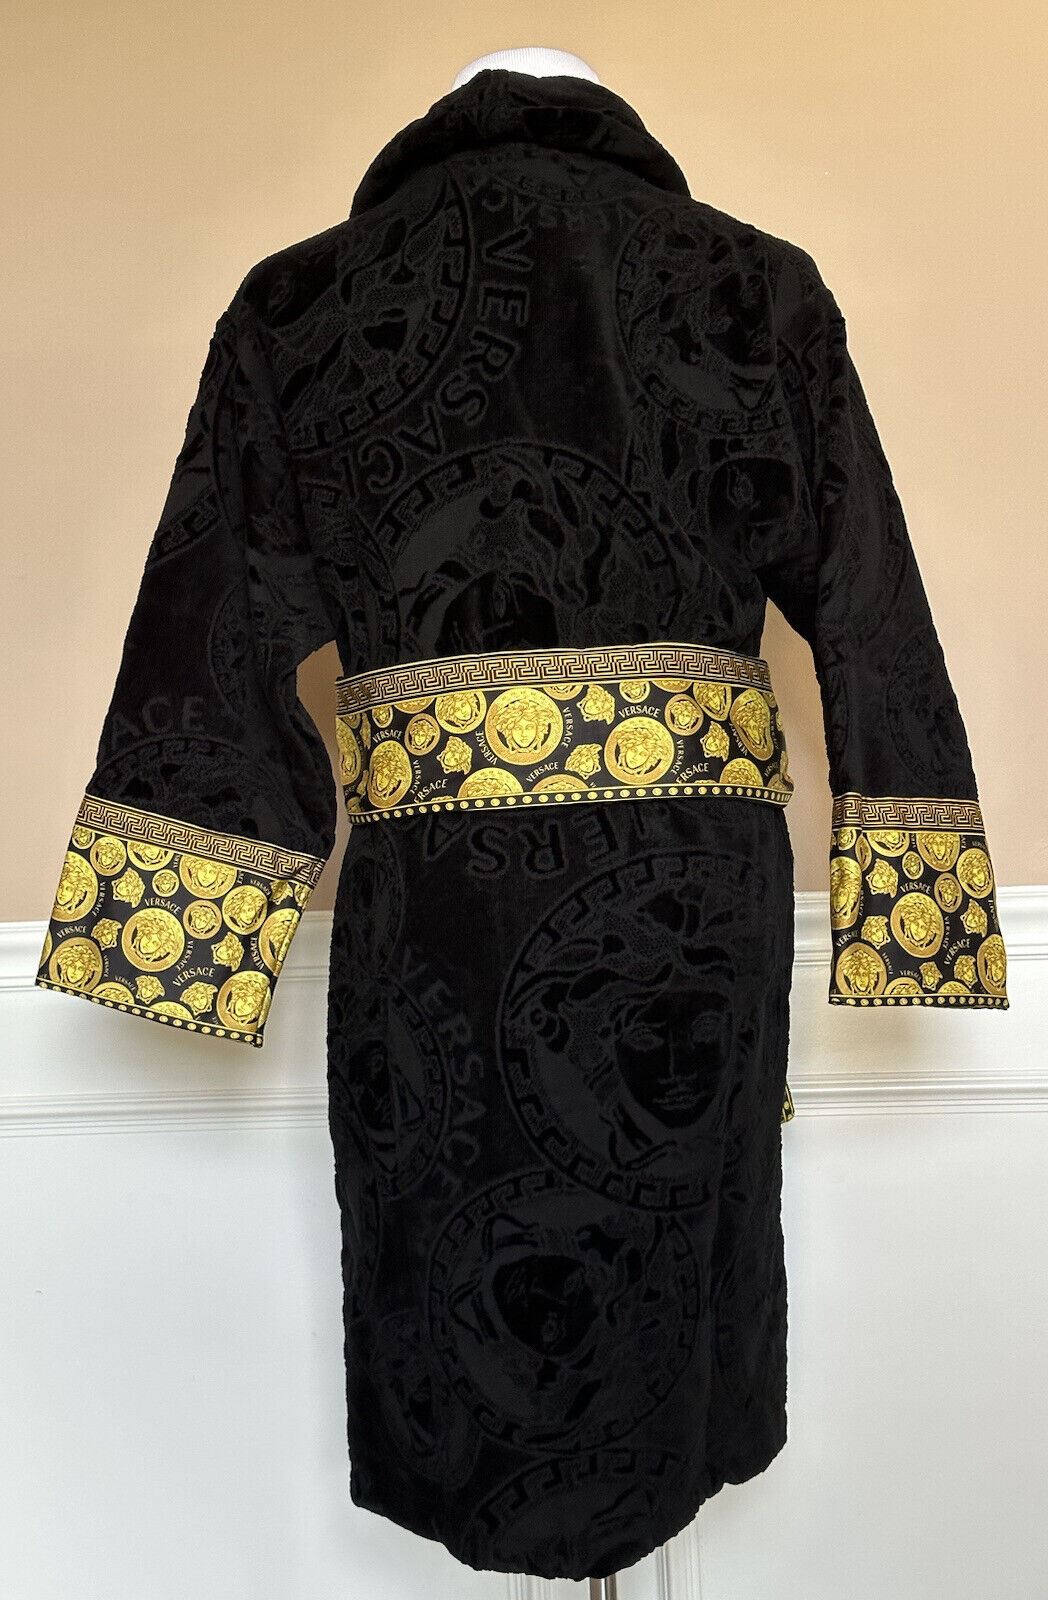 NWT $1500 Versace Medusa Хлопковый махровый банный халат, черный, маленький ZACJ00008